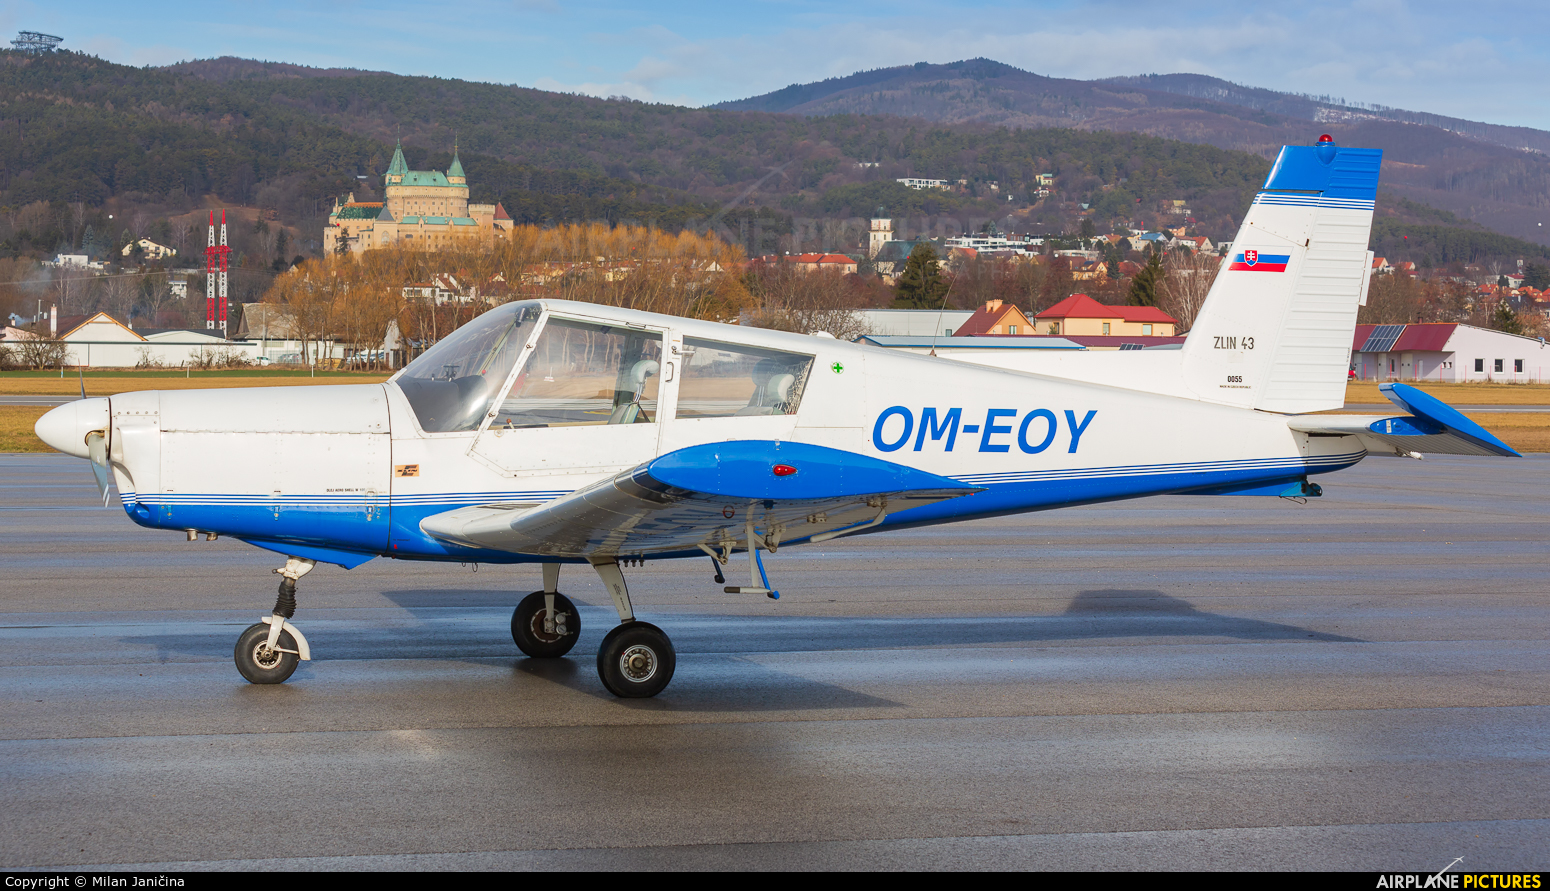 Aeroklub Prievidza OM-EOY aircraft at Prievidza